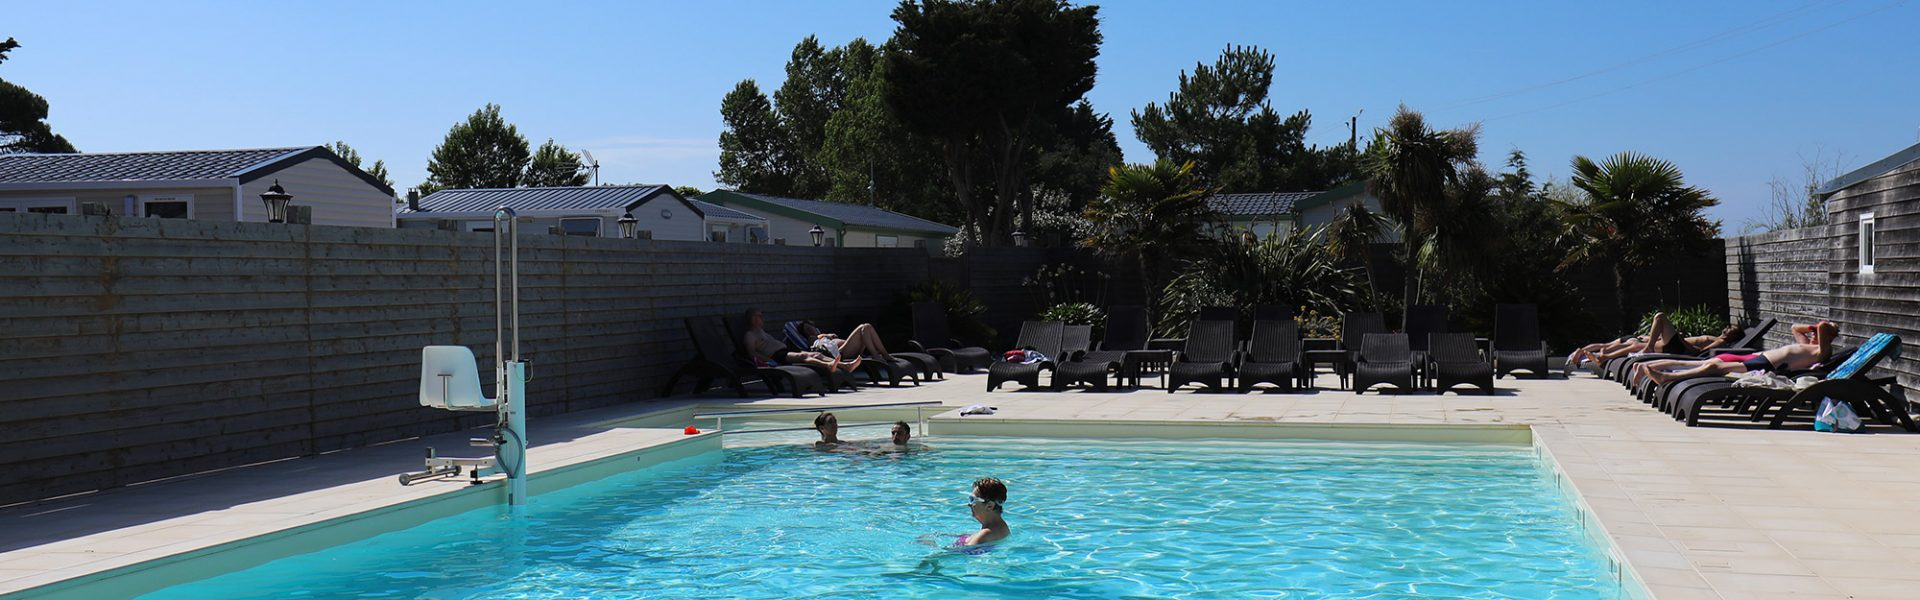 Campsite With Heated Pool On The Ile-De-Ré - Campiotel dedans Camping Ile De Ré Avec Piscine